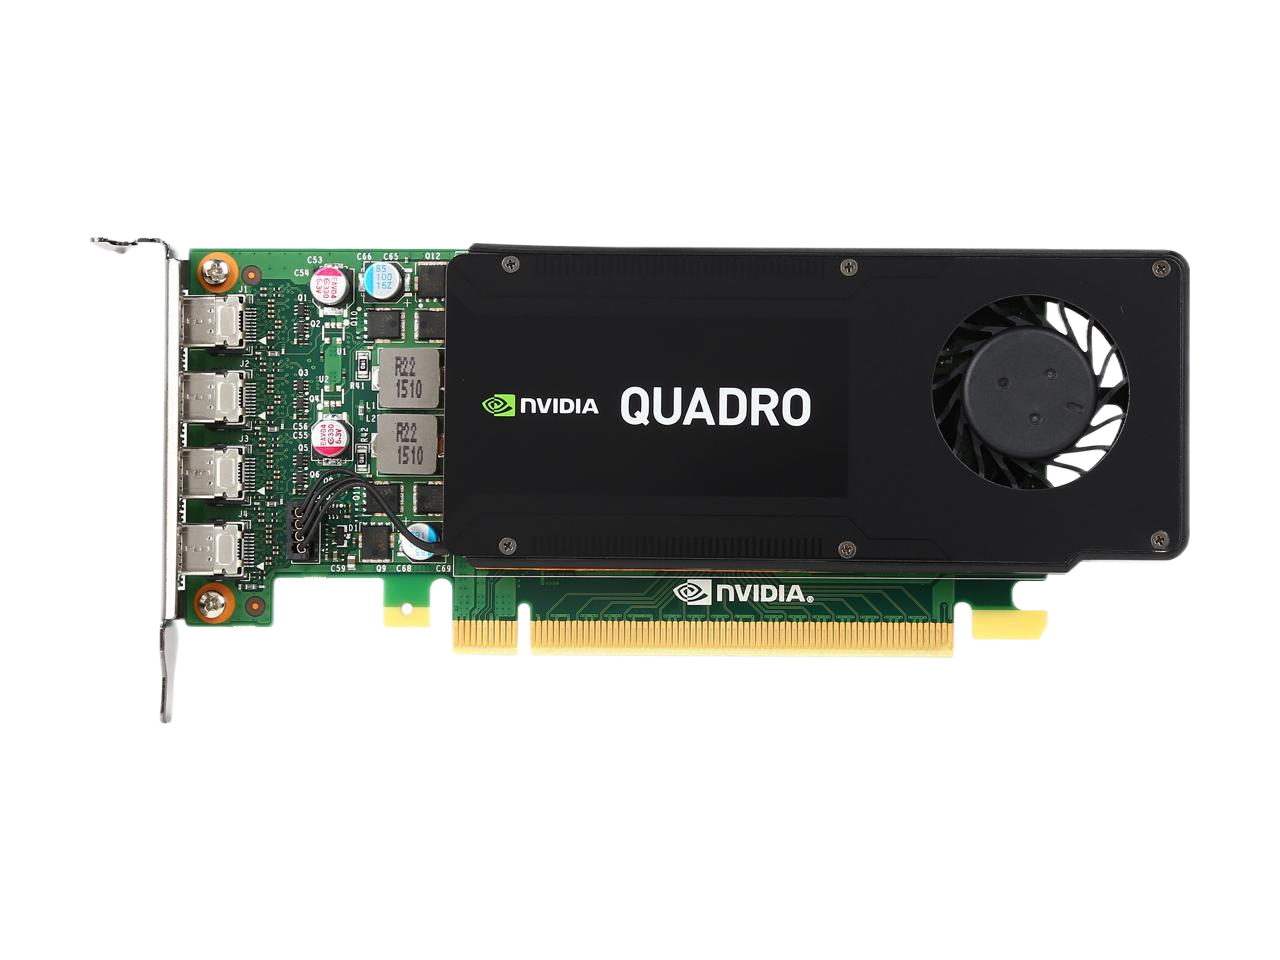 PNY Quadro K1200 4GB 128-bit GDDR5 PCI Express 2.0 ATX or SFF Workstation Video Card VCQK1200DVI-PB